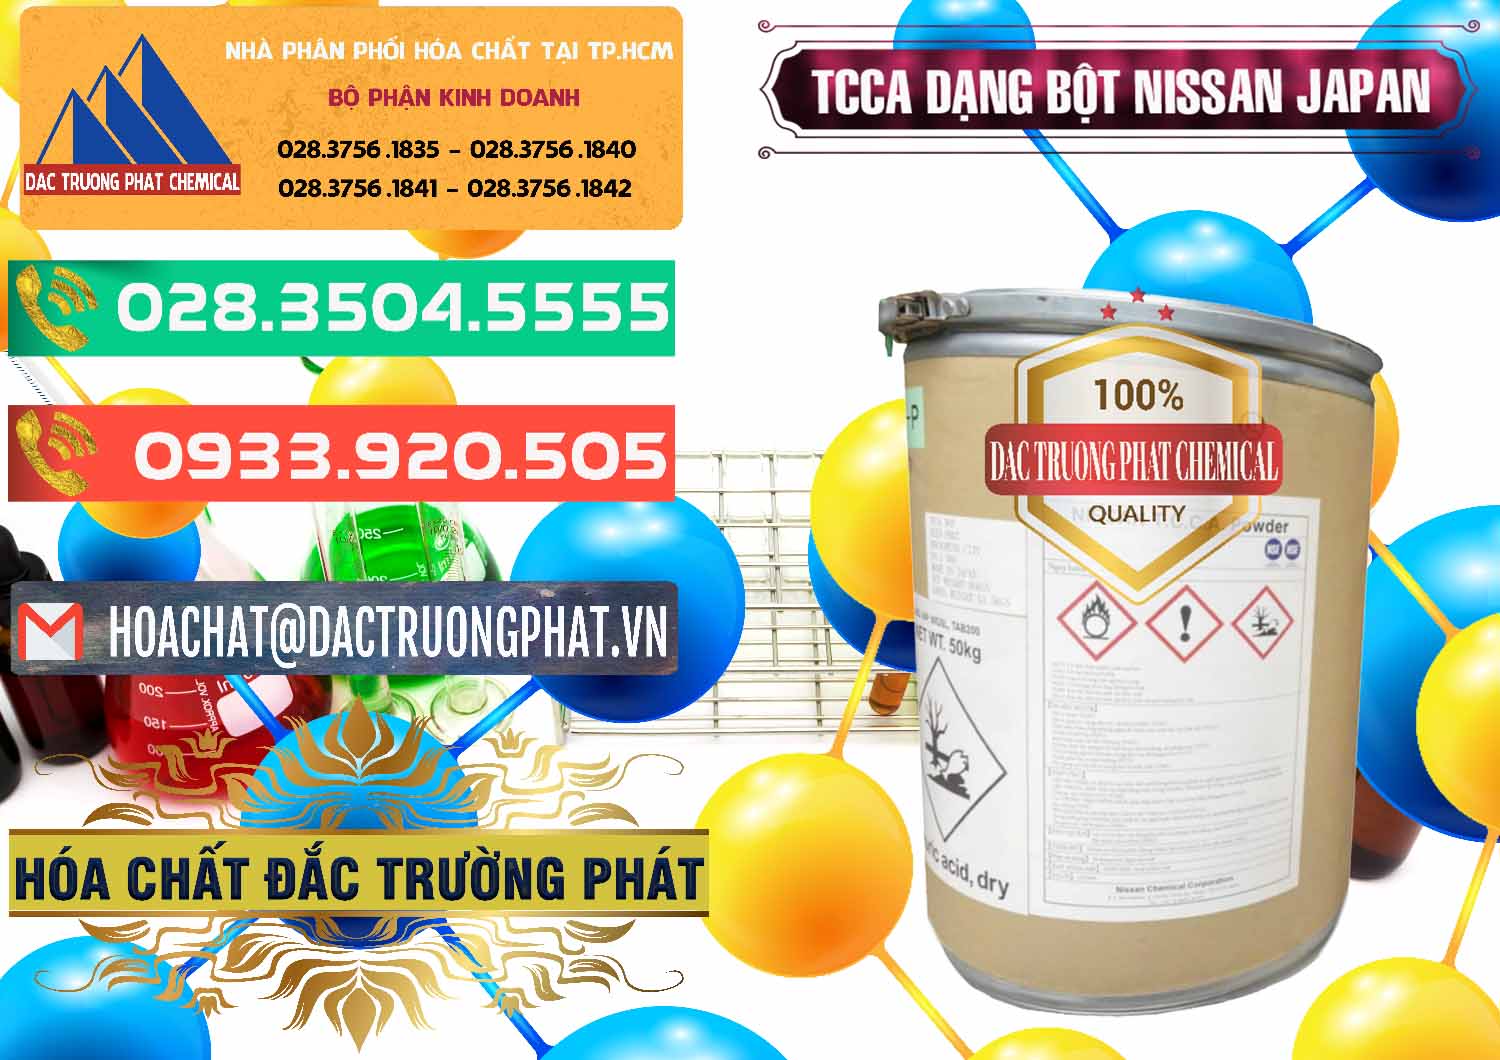 Nơi chuyên cung ứng - bán TCCA - Acid Trichloroisocyanuric 90% Dạng Bột Nissan Nhật Bản Japan - 0375 - Chuyên phân phối và kinh doanh hóa chất tại TP.HCM - congtyhoachat.com.vn